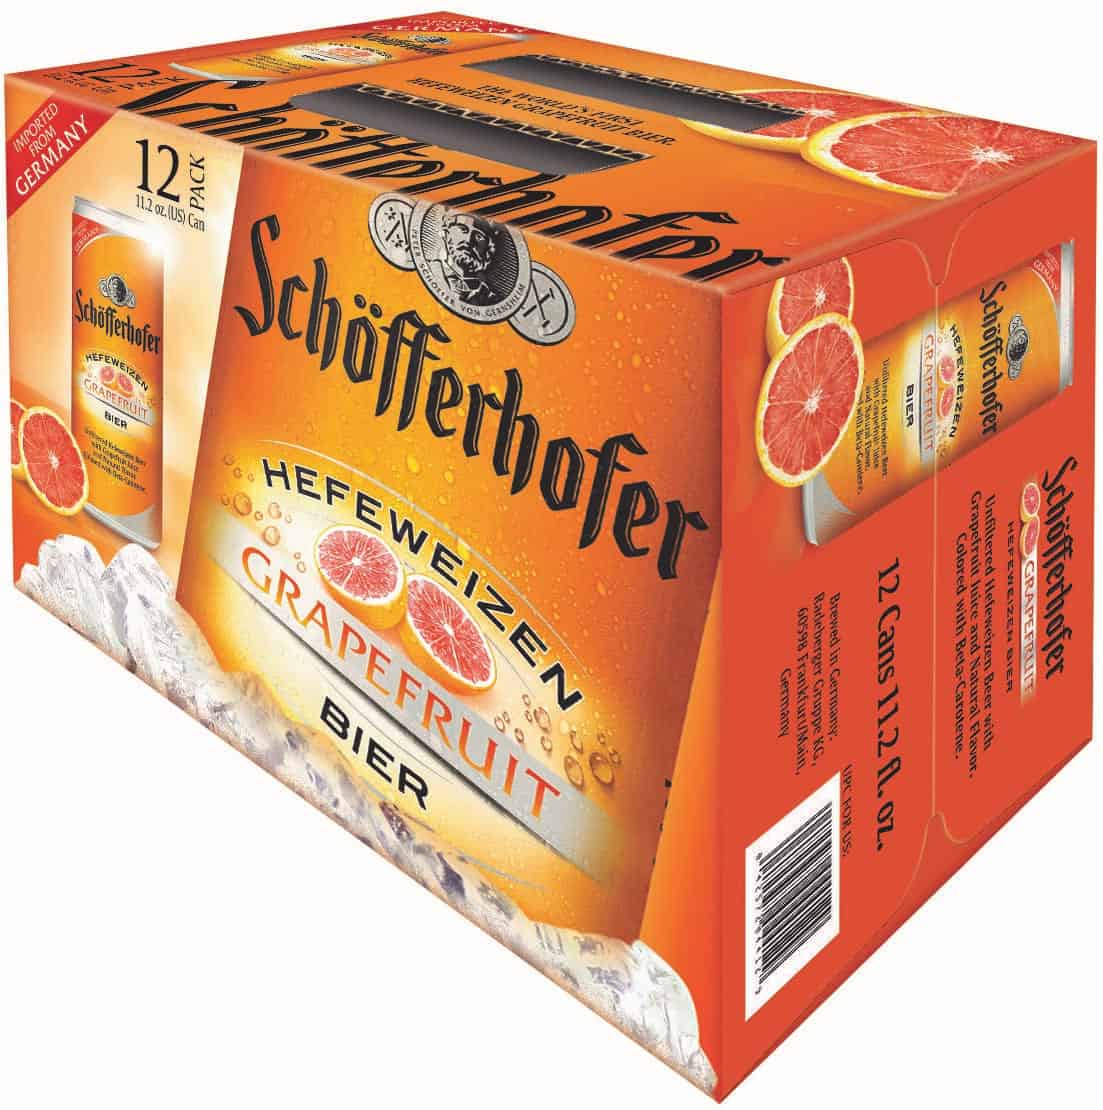 Schoefferhoffer can 12-pack